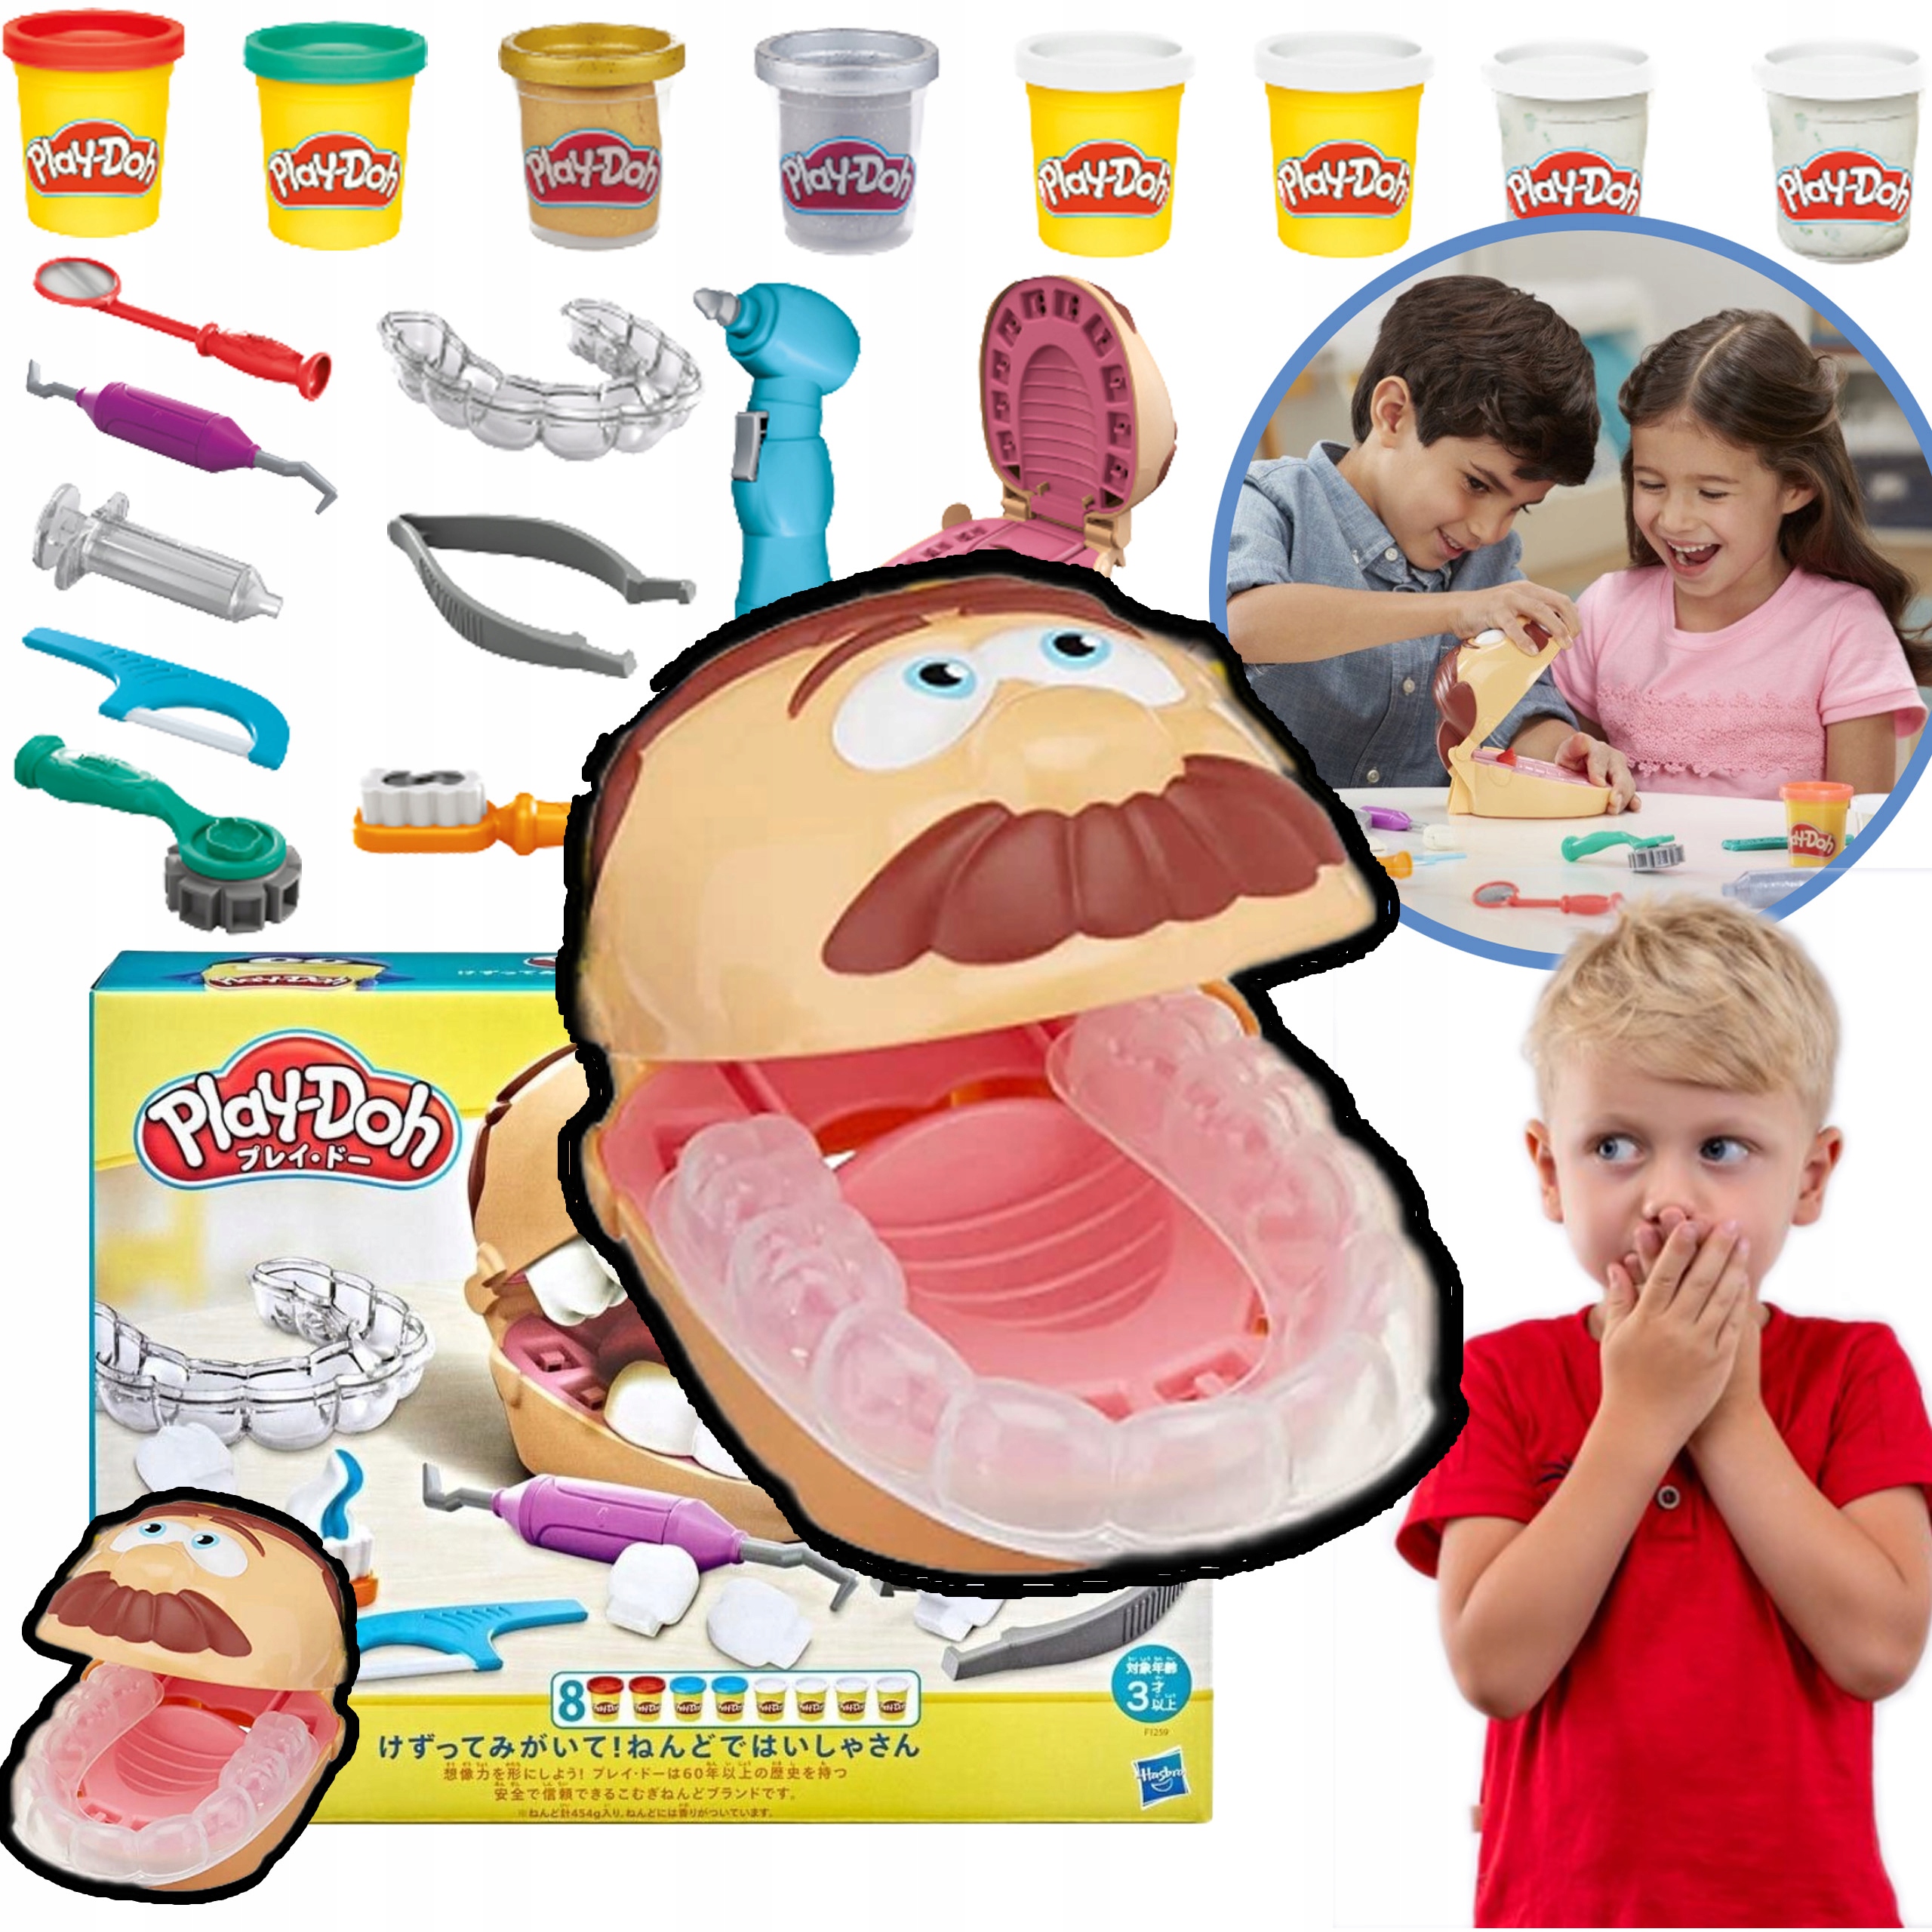 

Play-doh Wielki Zestaw Dentysta Dentystyczny 18W1